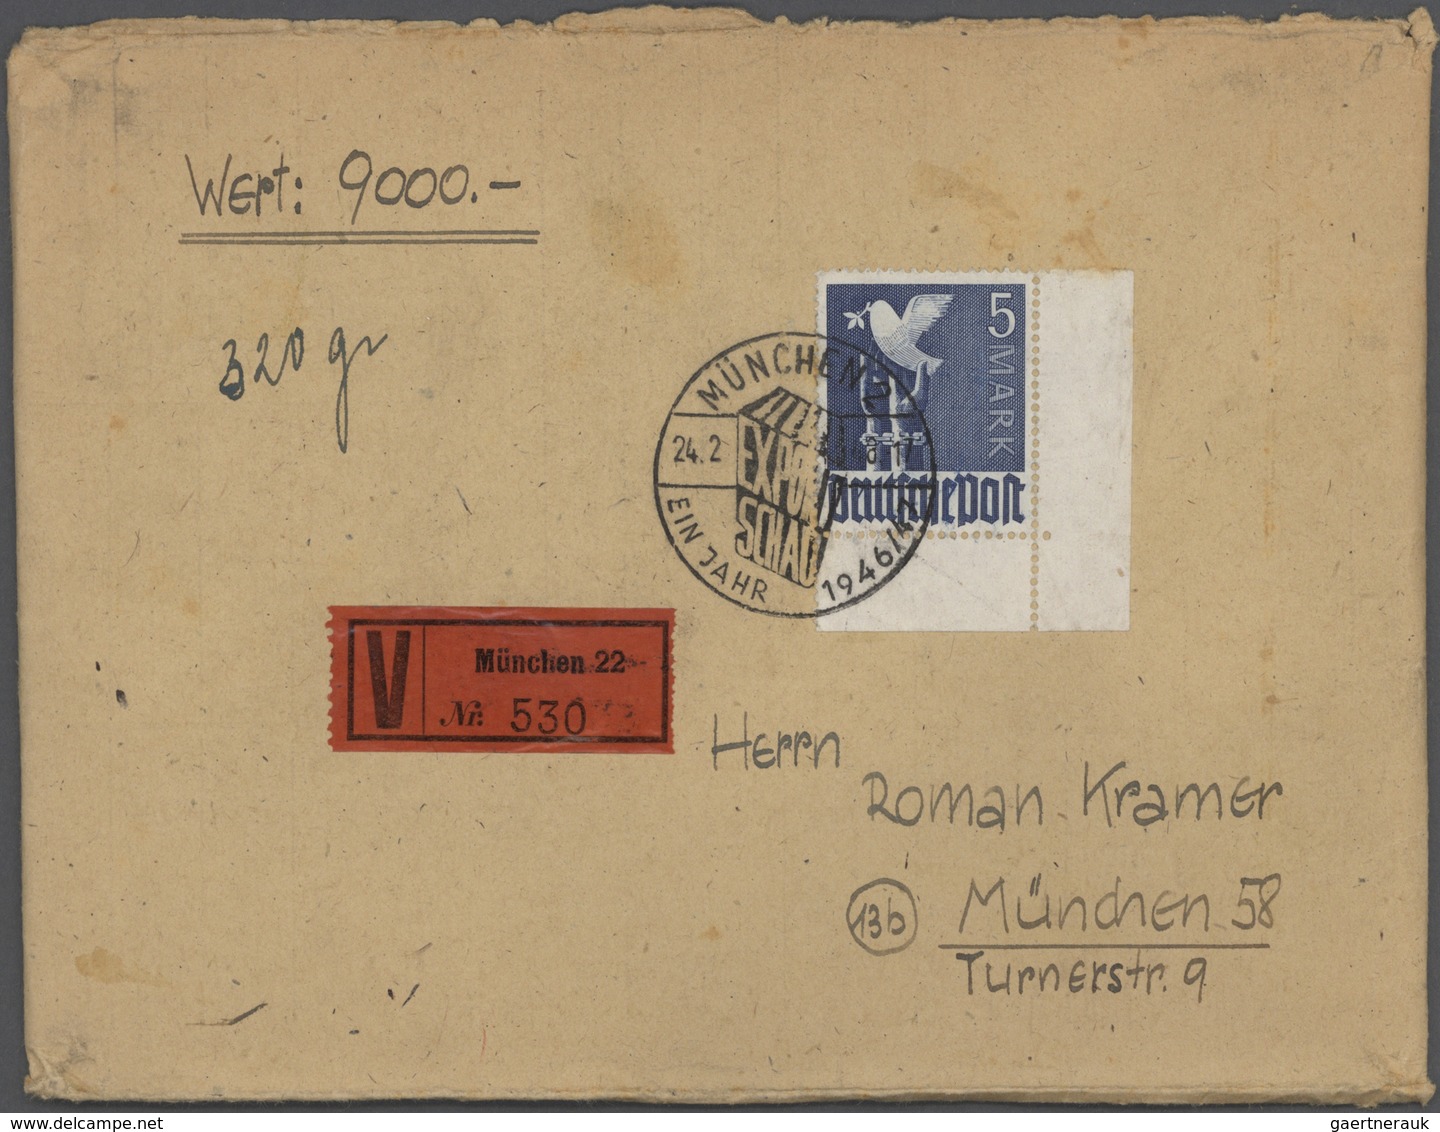 32112 Deutschland nach 1945: 1945/1949, Sammlung von ca. 220 Briefen und Karten mit Frankaturen Kontrollra